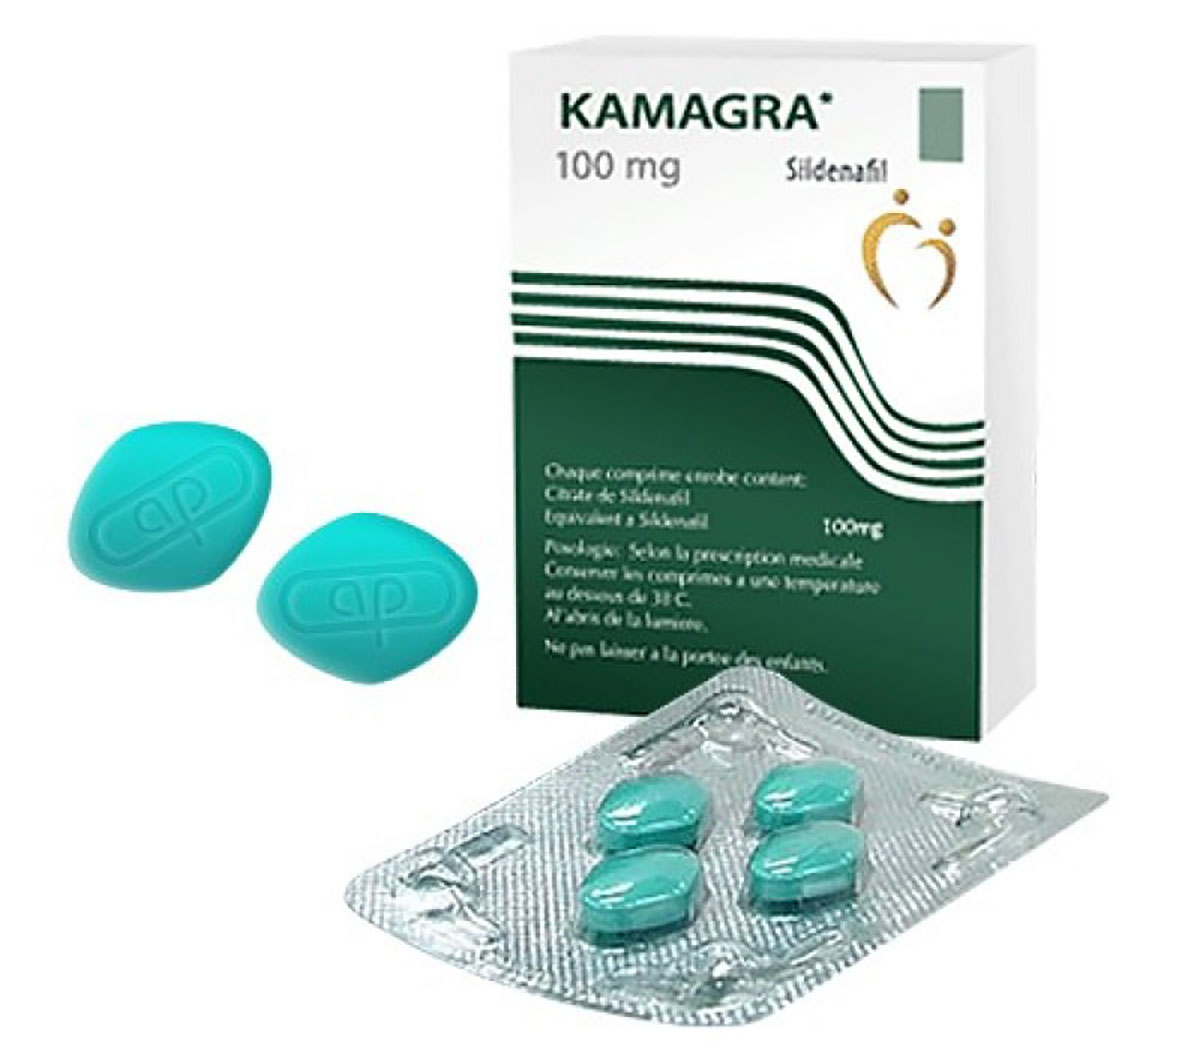 Kamagra (Sildenafil Citrate) - Vorteile aund Nachteile